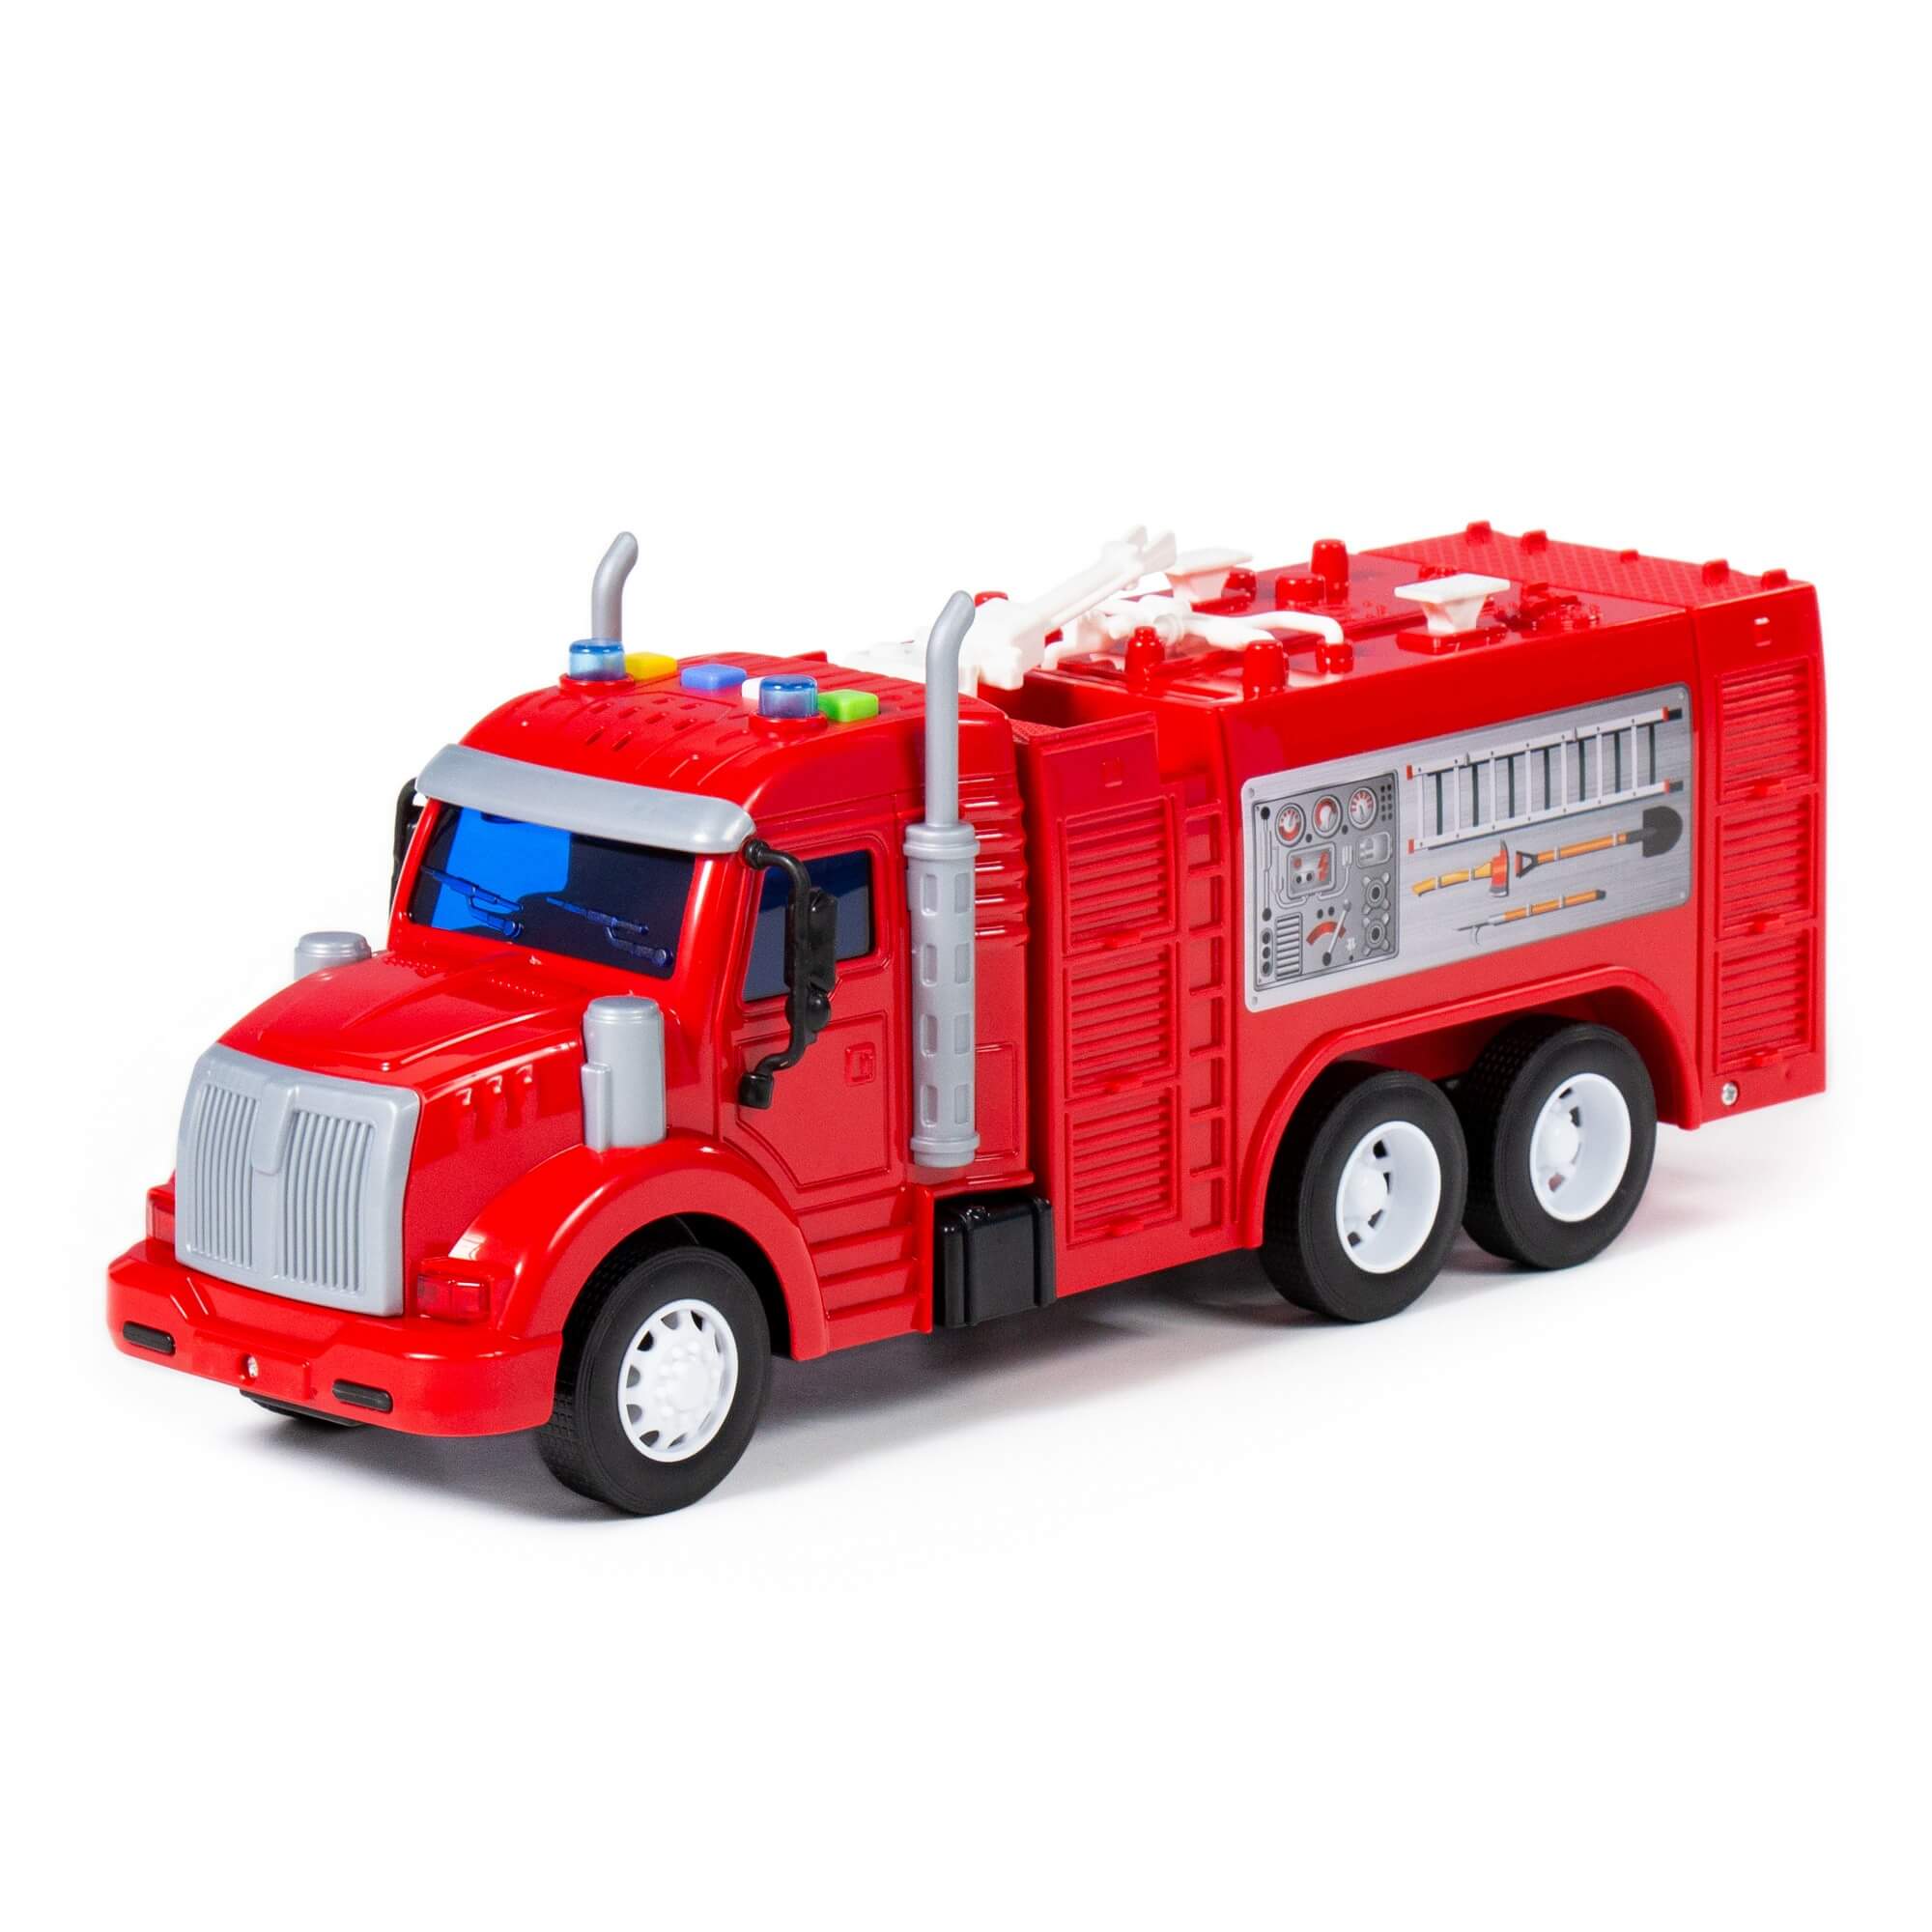 Автомобиль пожарный Профи, красный (в коробке) Полесье 86518 трактор полесье belarus снегоуборочный красный 91888 xd5